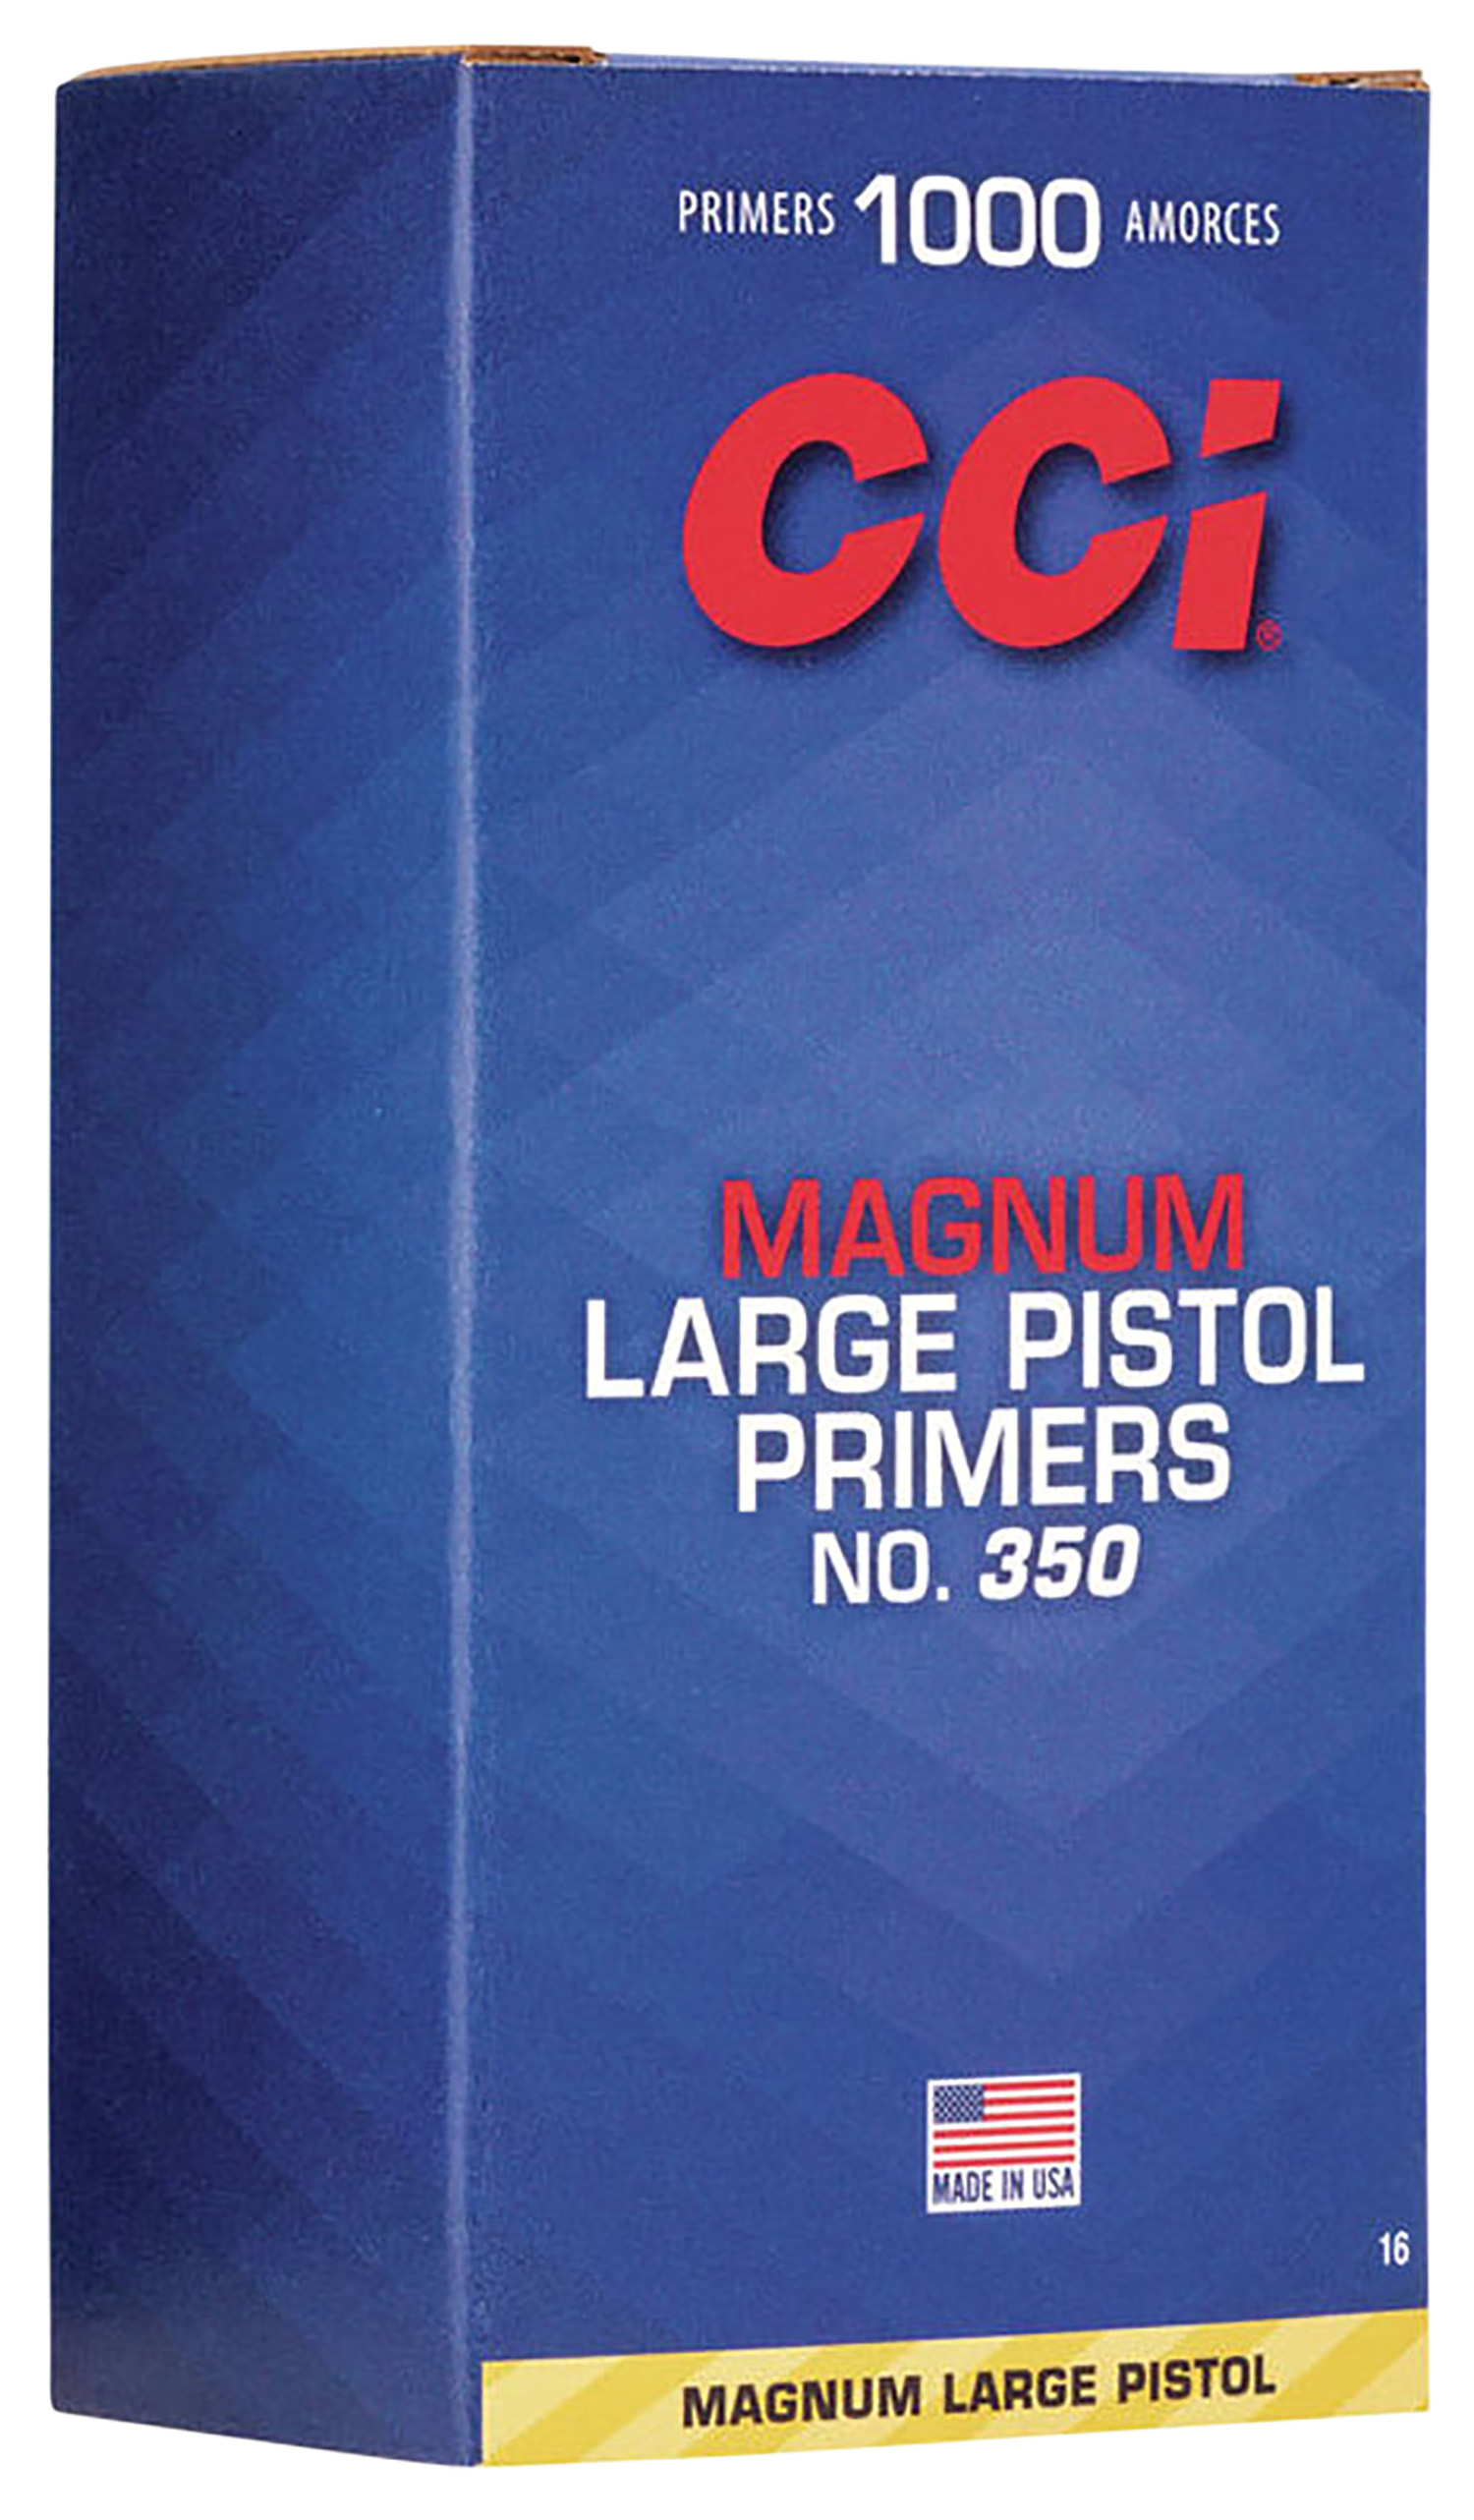 CCI 0016 Magnum Pistol No. 350 Large Pistol Multi-Caliber Handgun 1000 Per Pack